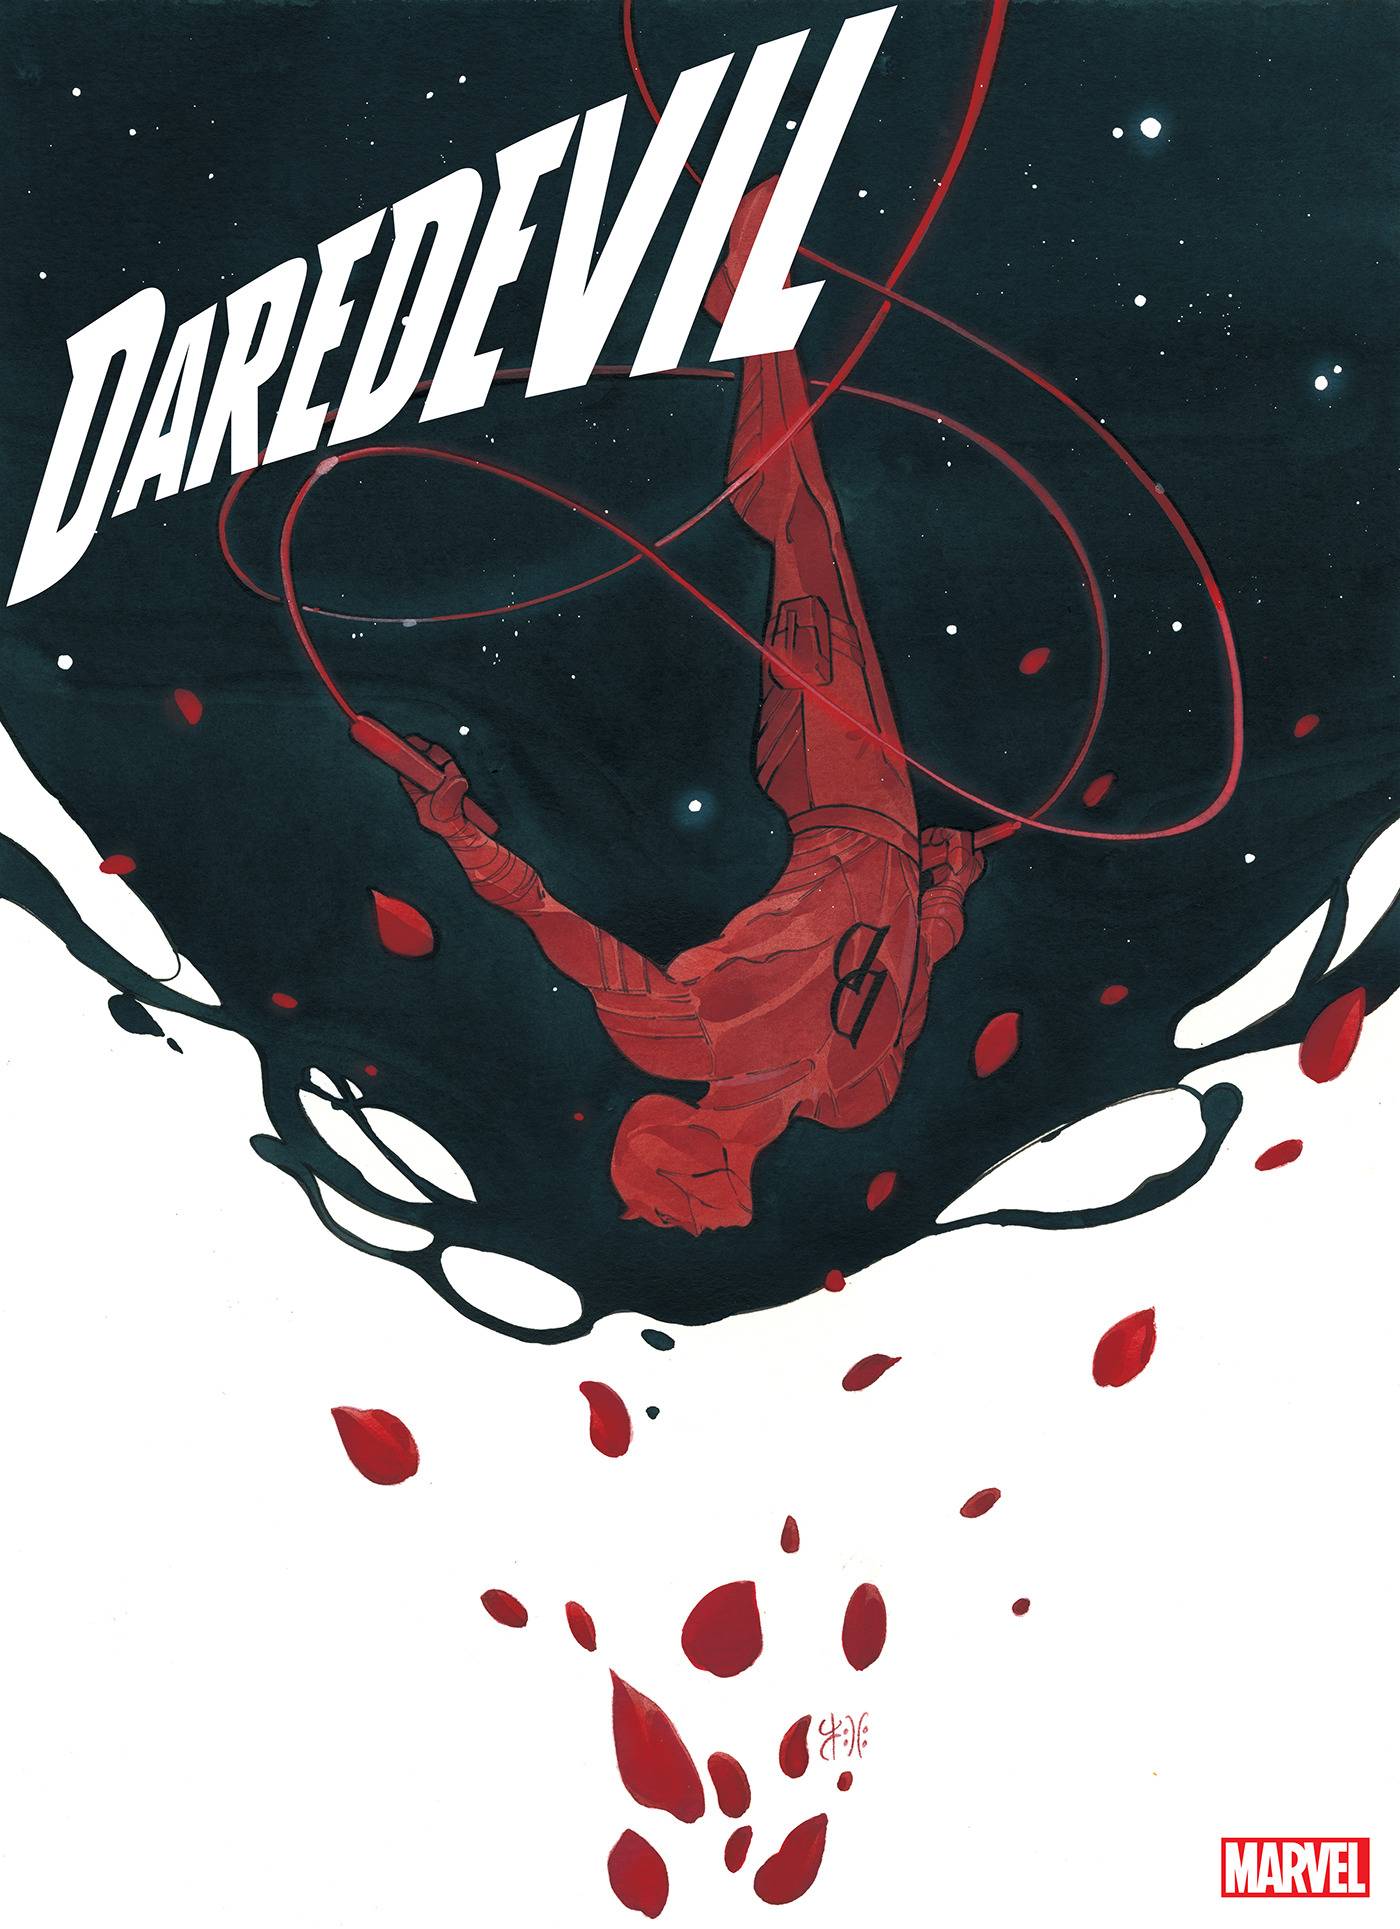 DAREDEVIL #1 - The Comic Construct